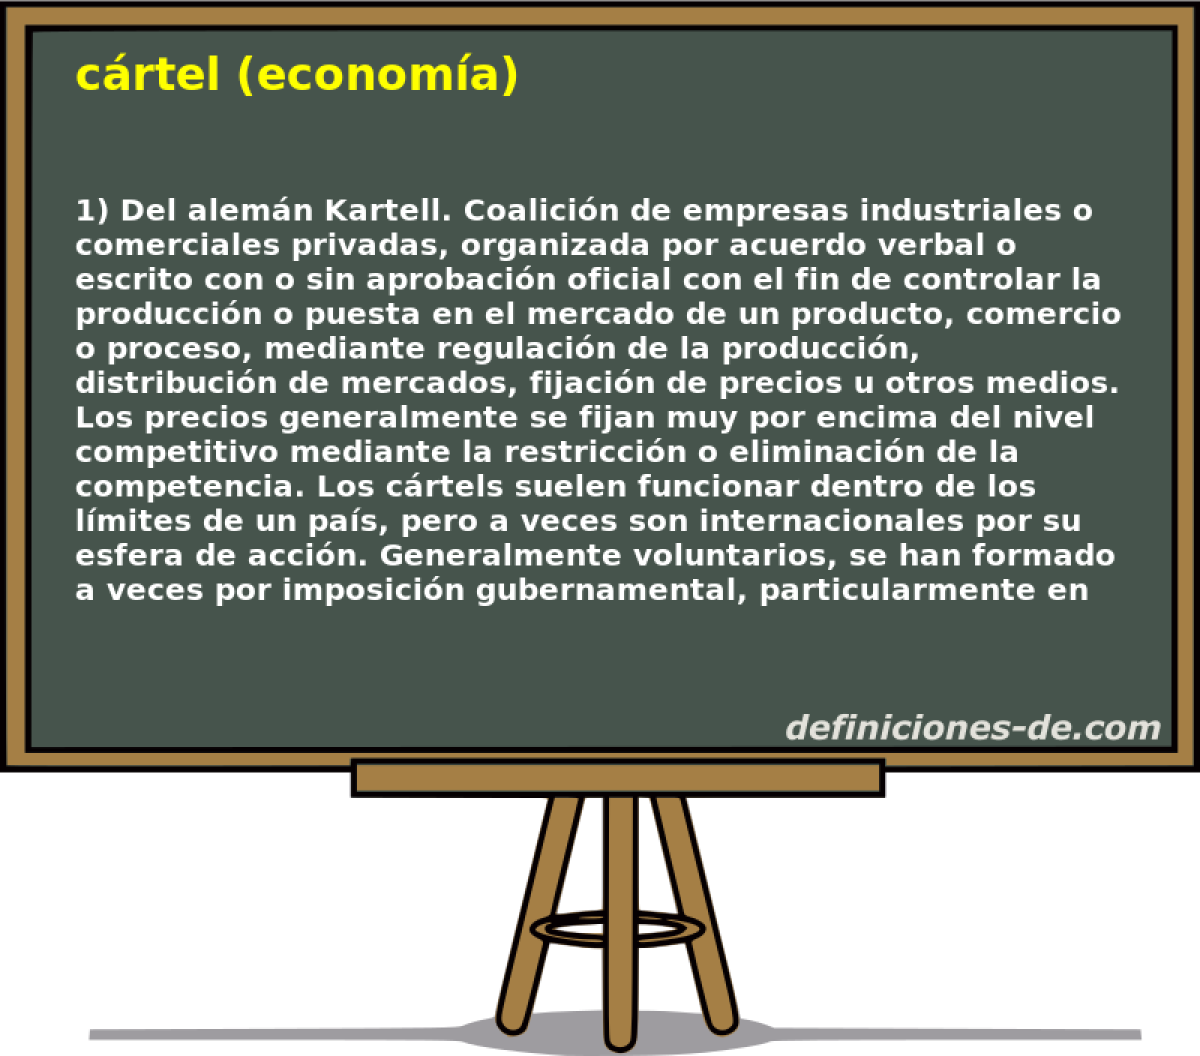 crtel (economa) 